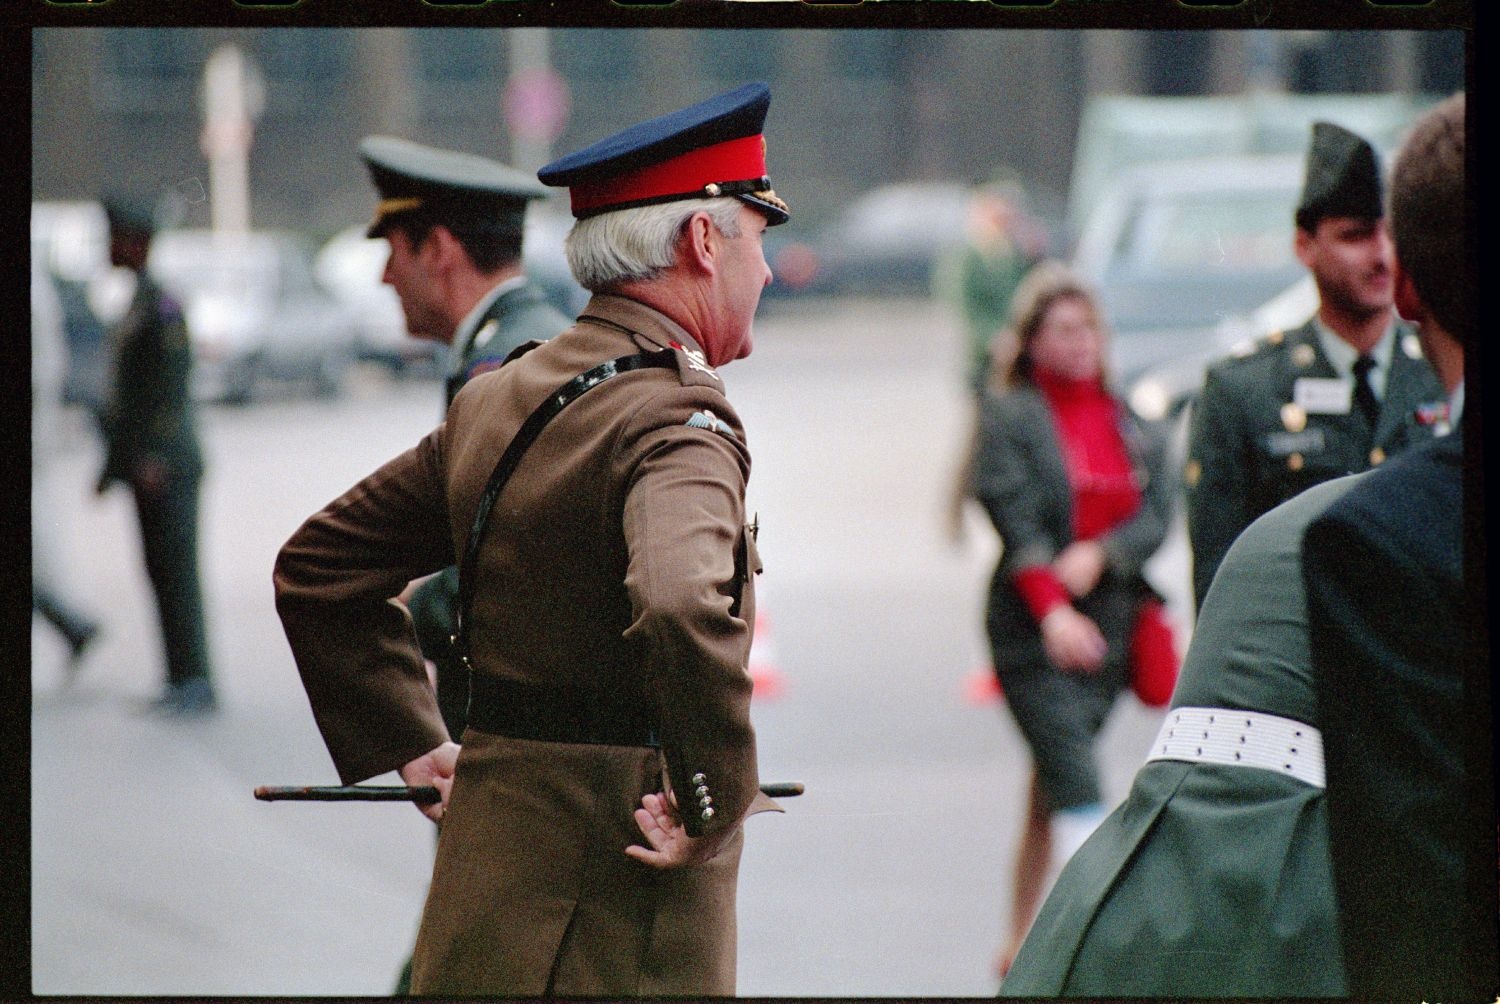 Fotografie: Feierliche Übergabe des Alliierten Kontrollhäuschens vom Checkpoint Charlie an das Deutsche Historische Museum in Berlin